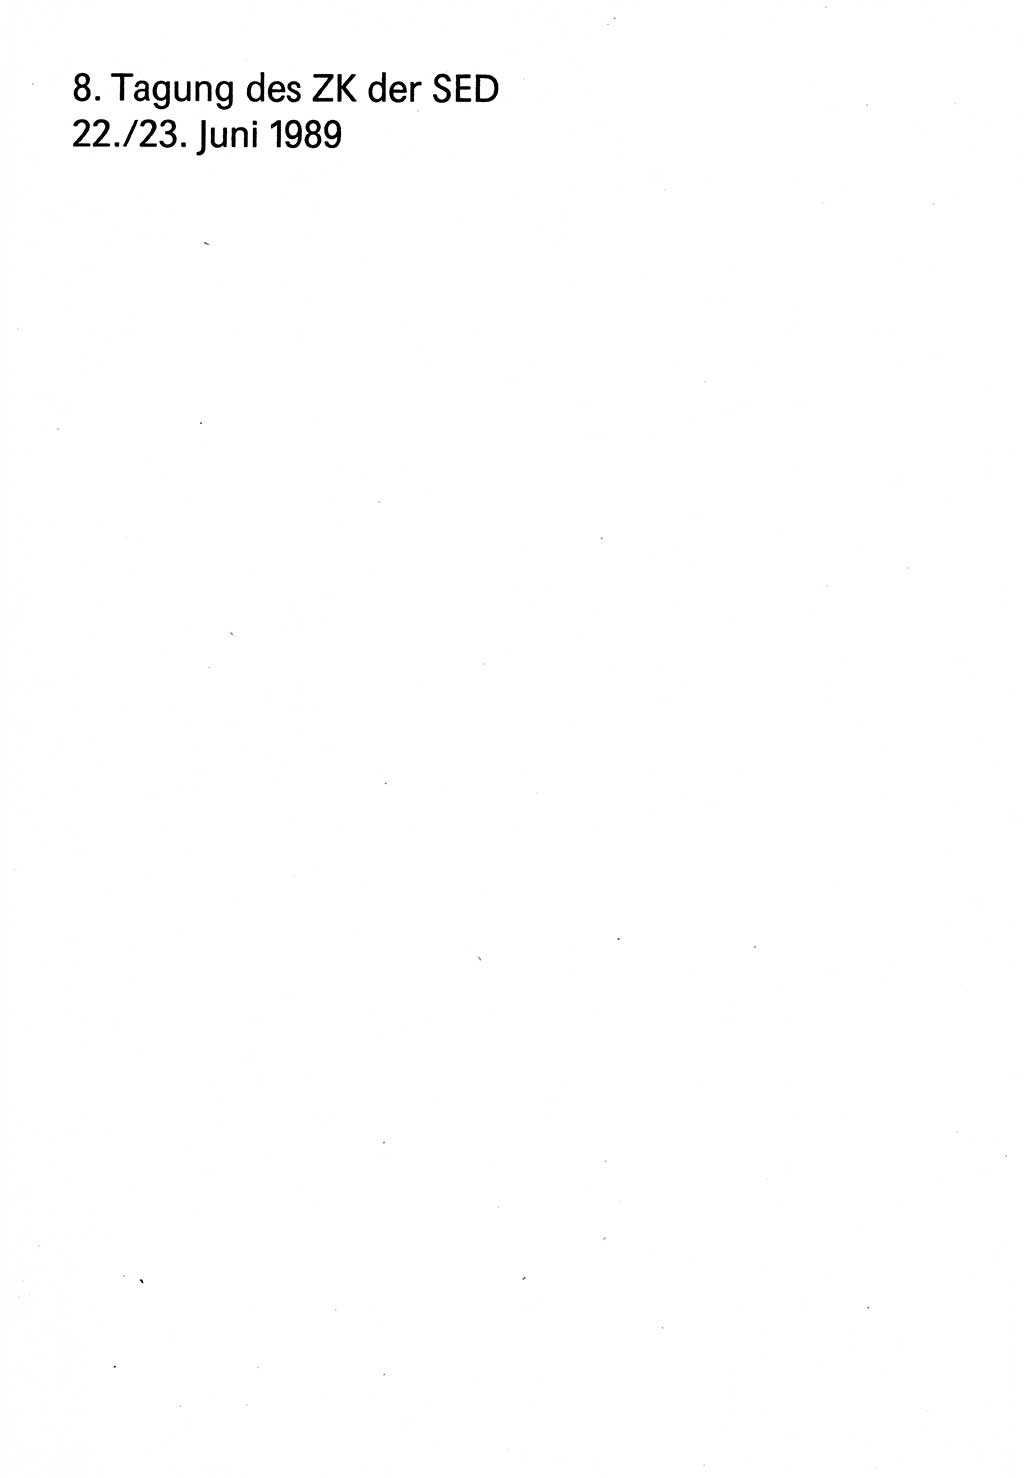 Diskussionsreden, 8. Tagung des ZK (Zentralkomitee) der SED (Sozialistische Einheitspartei Deutschlands) [Deutsche Demokratische Republik (DDR)] 1989, Seite 1 (Disk.-Red. 8. Tg. ZK SED DDR 1989, S. 1)